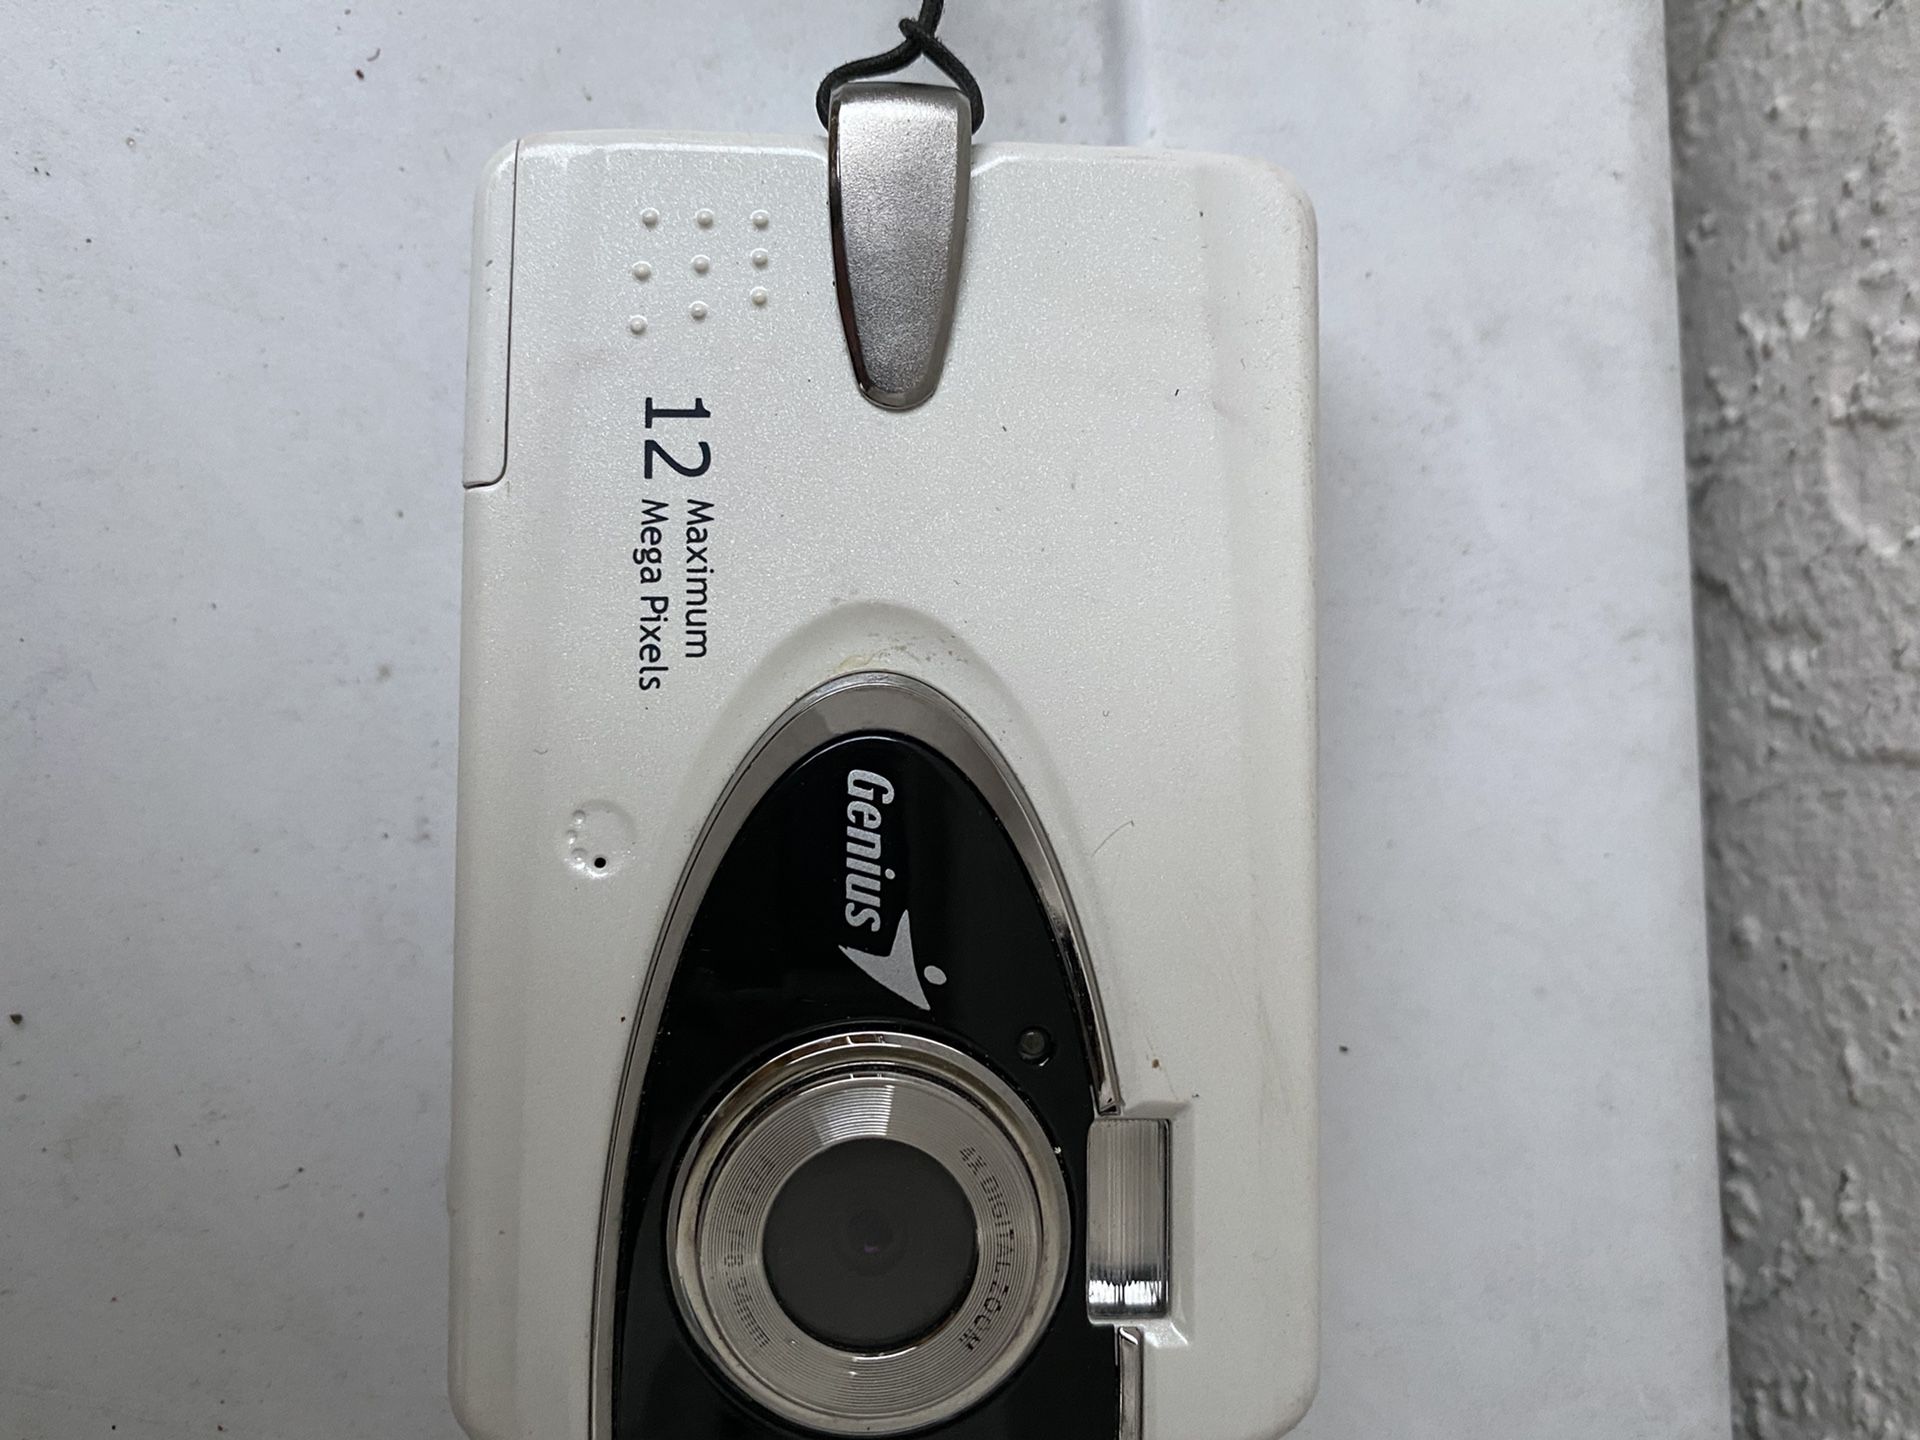 Genius digital camera